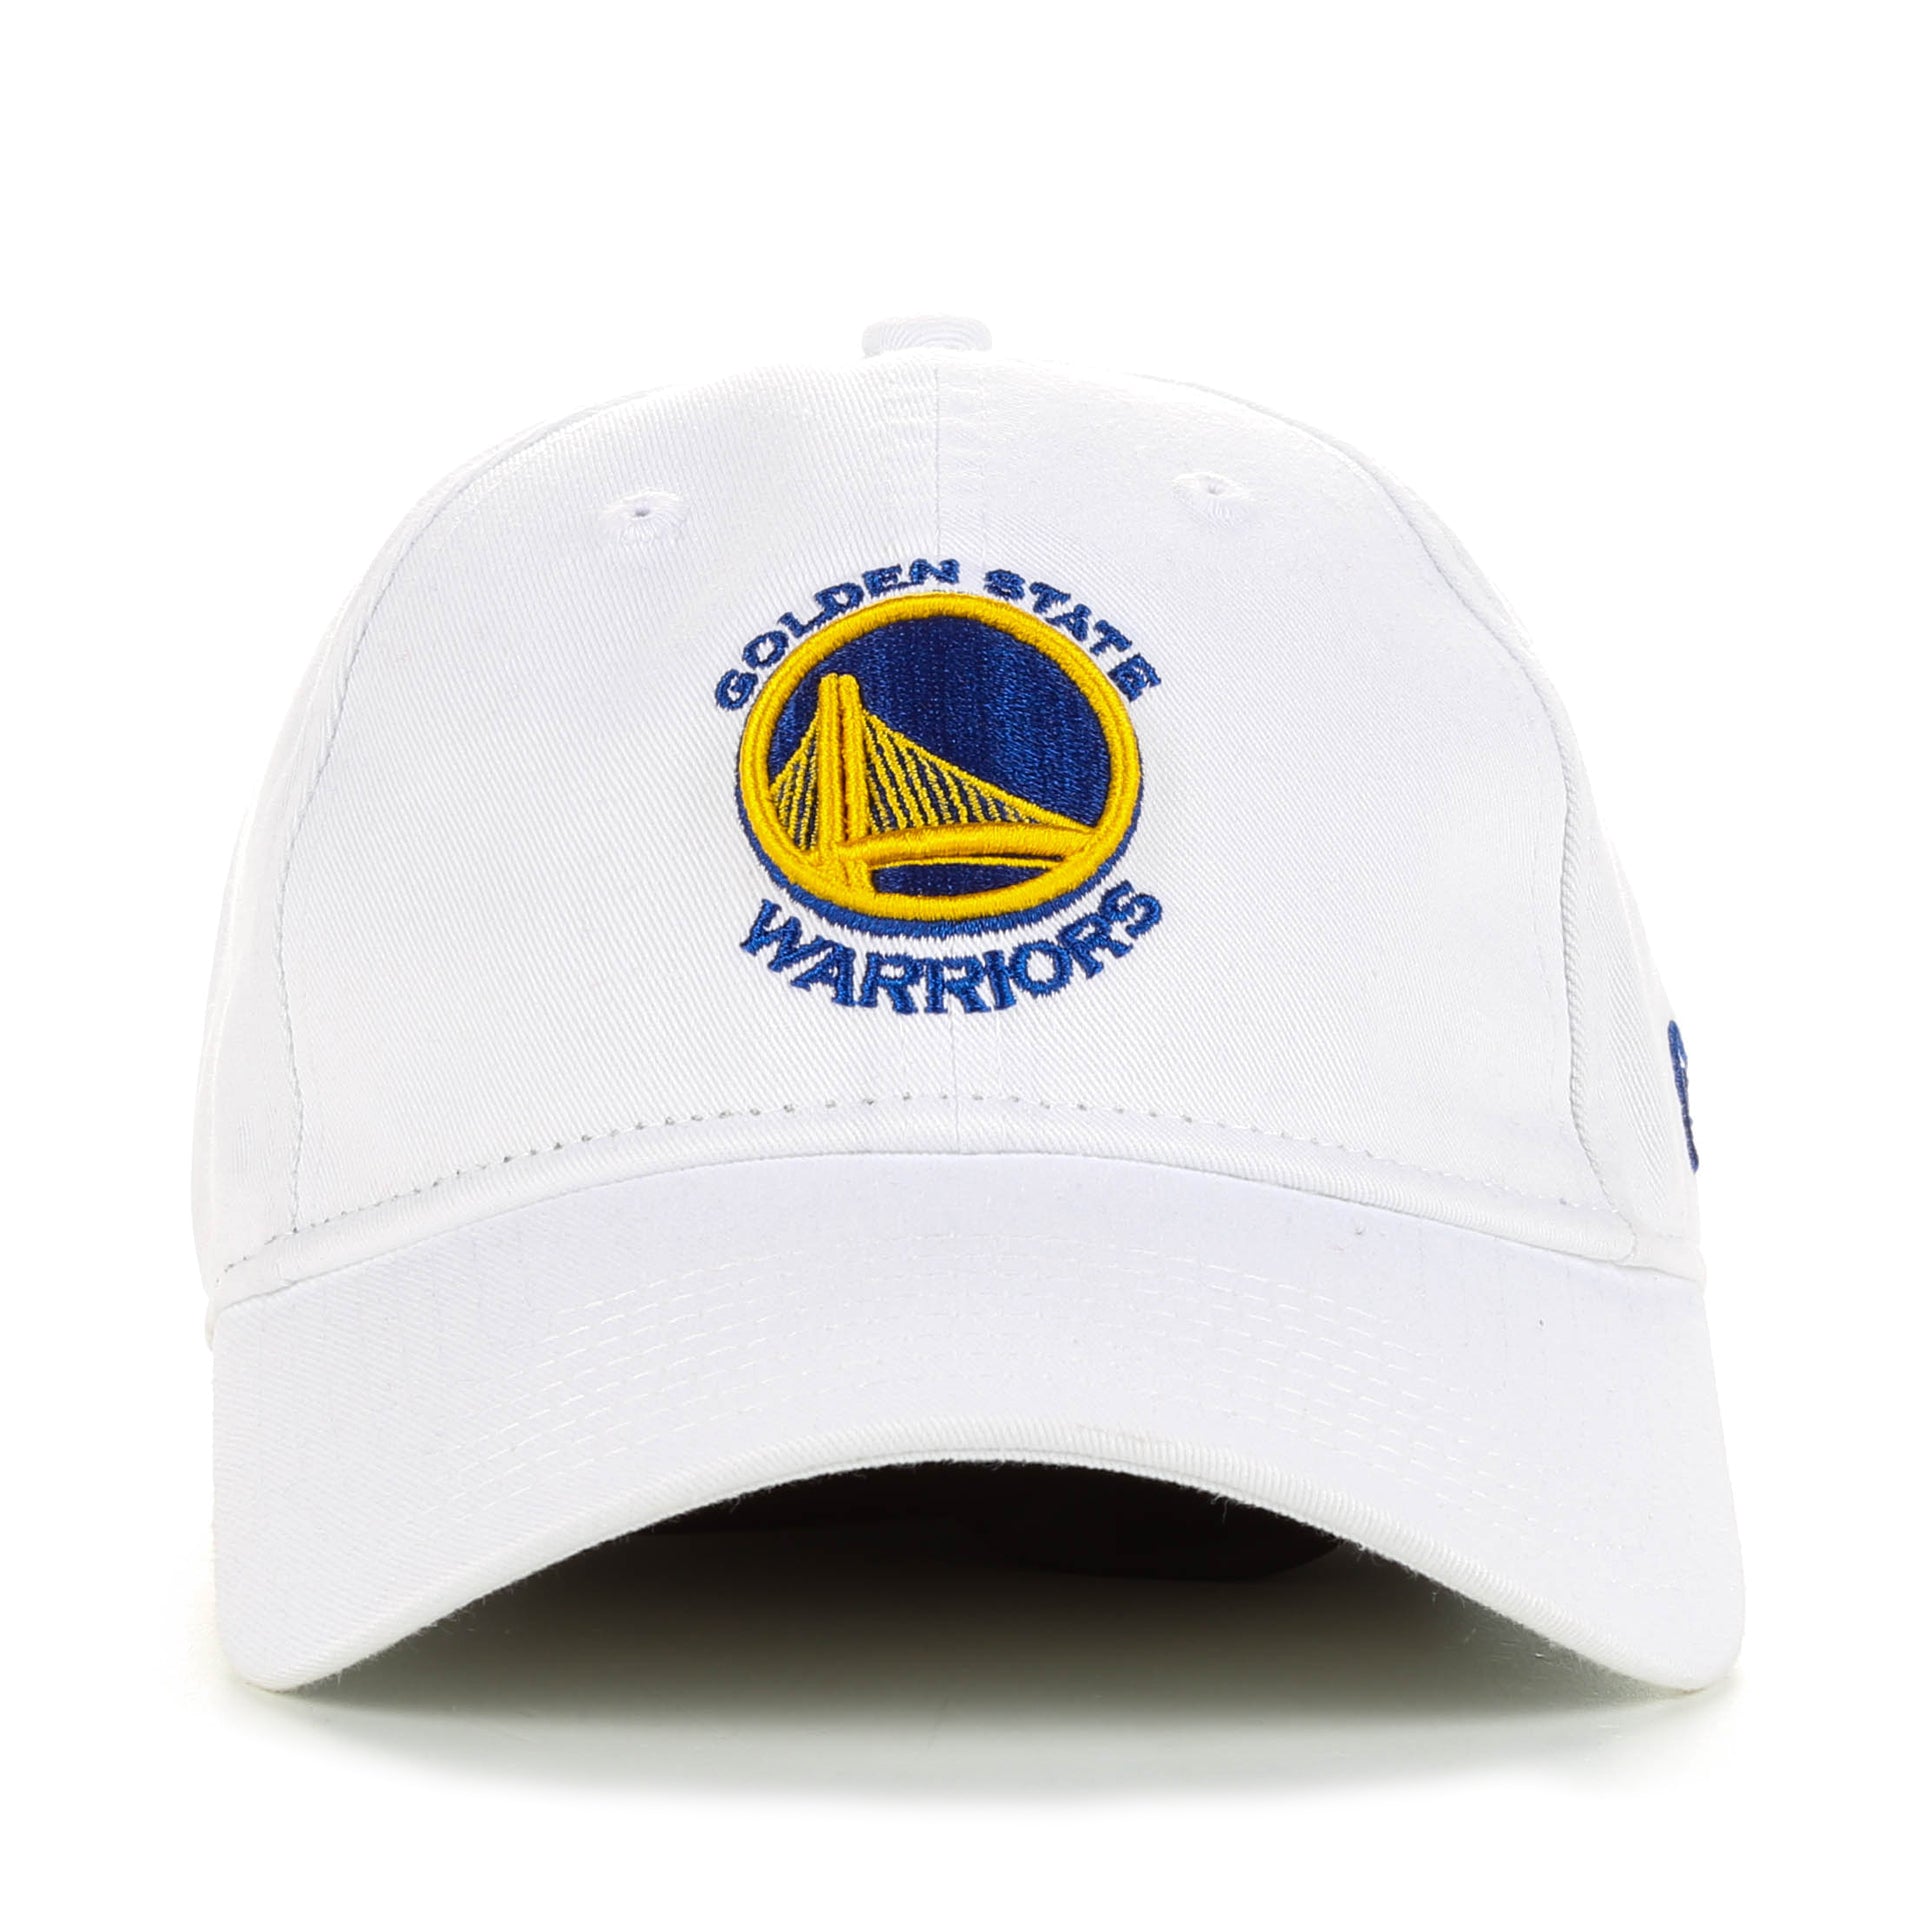 New Era Women's Golden State Warriors 9TWENTY Glisten Adjustable Hat, Team